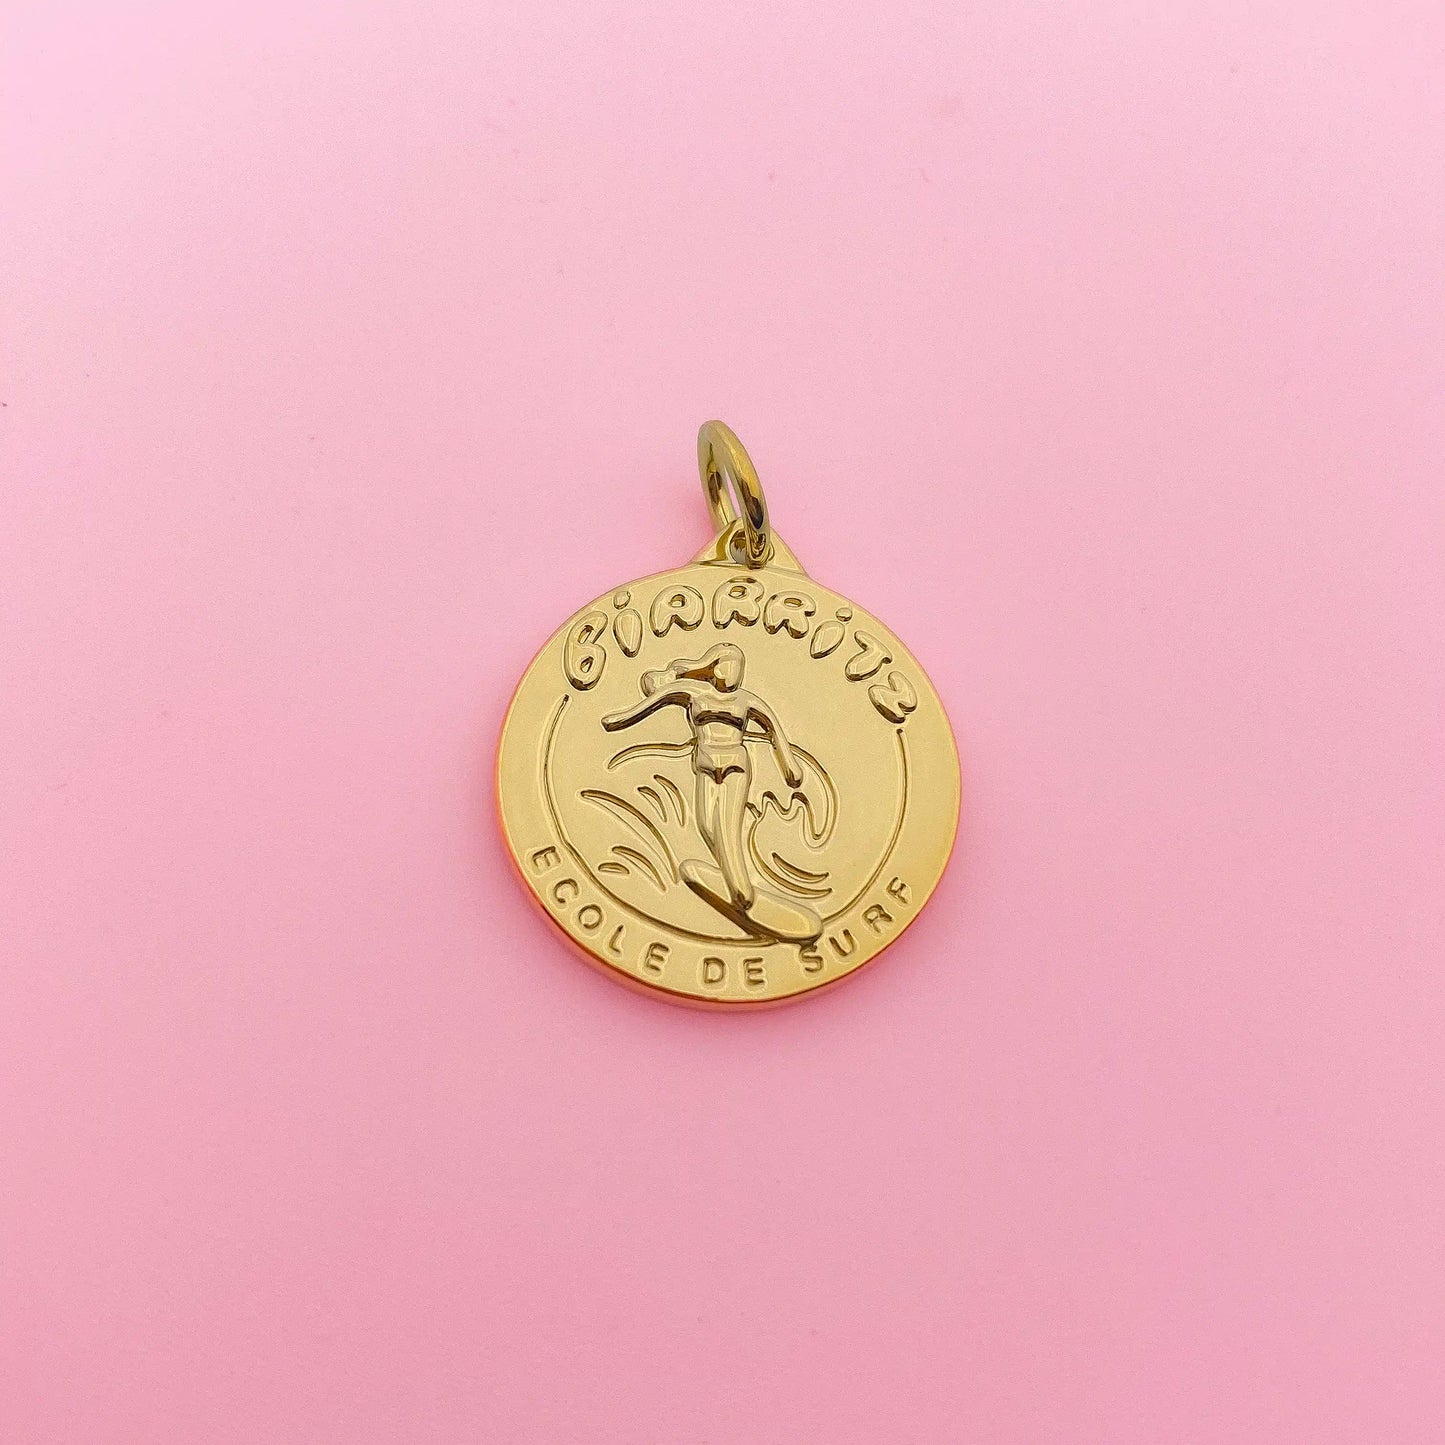 Médaille Biarritz - Camille Gressier